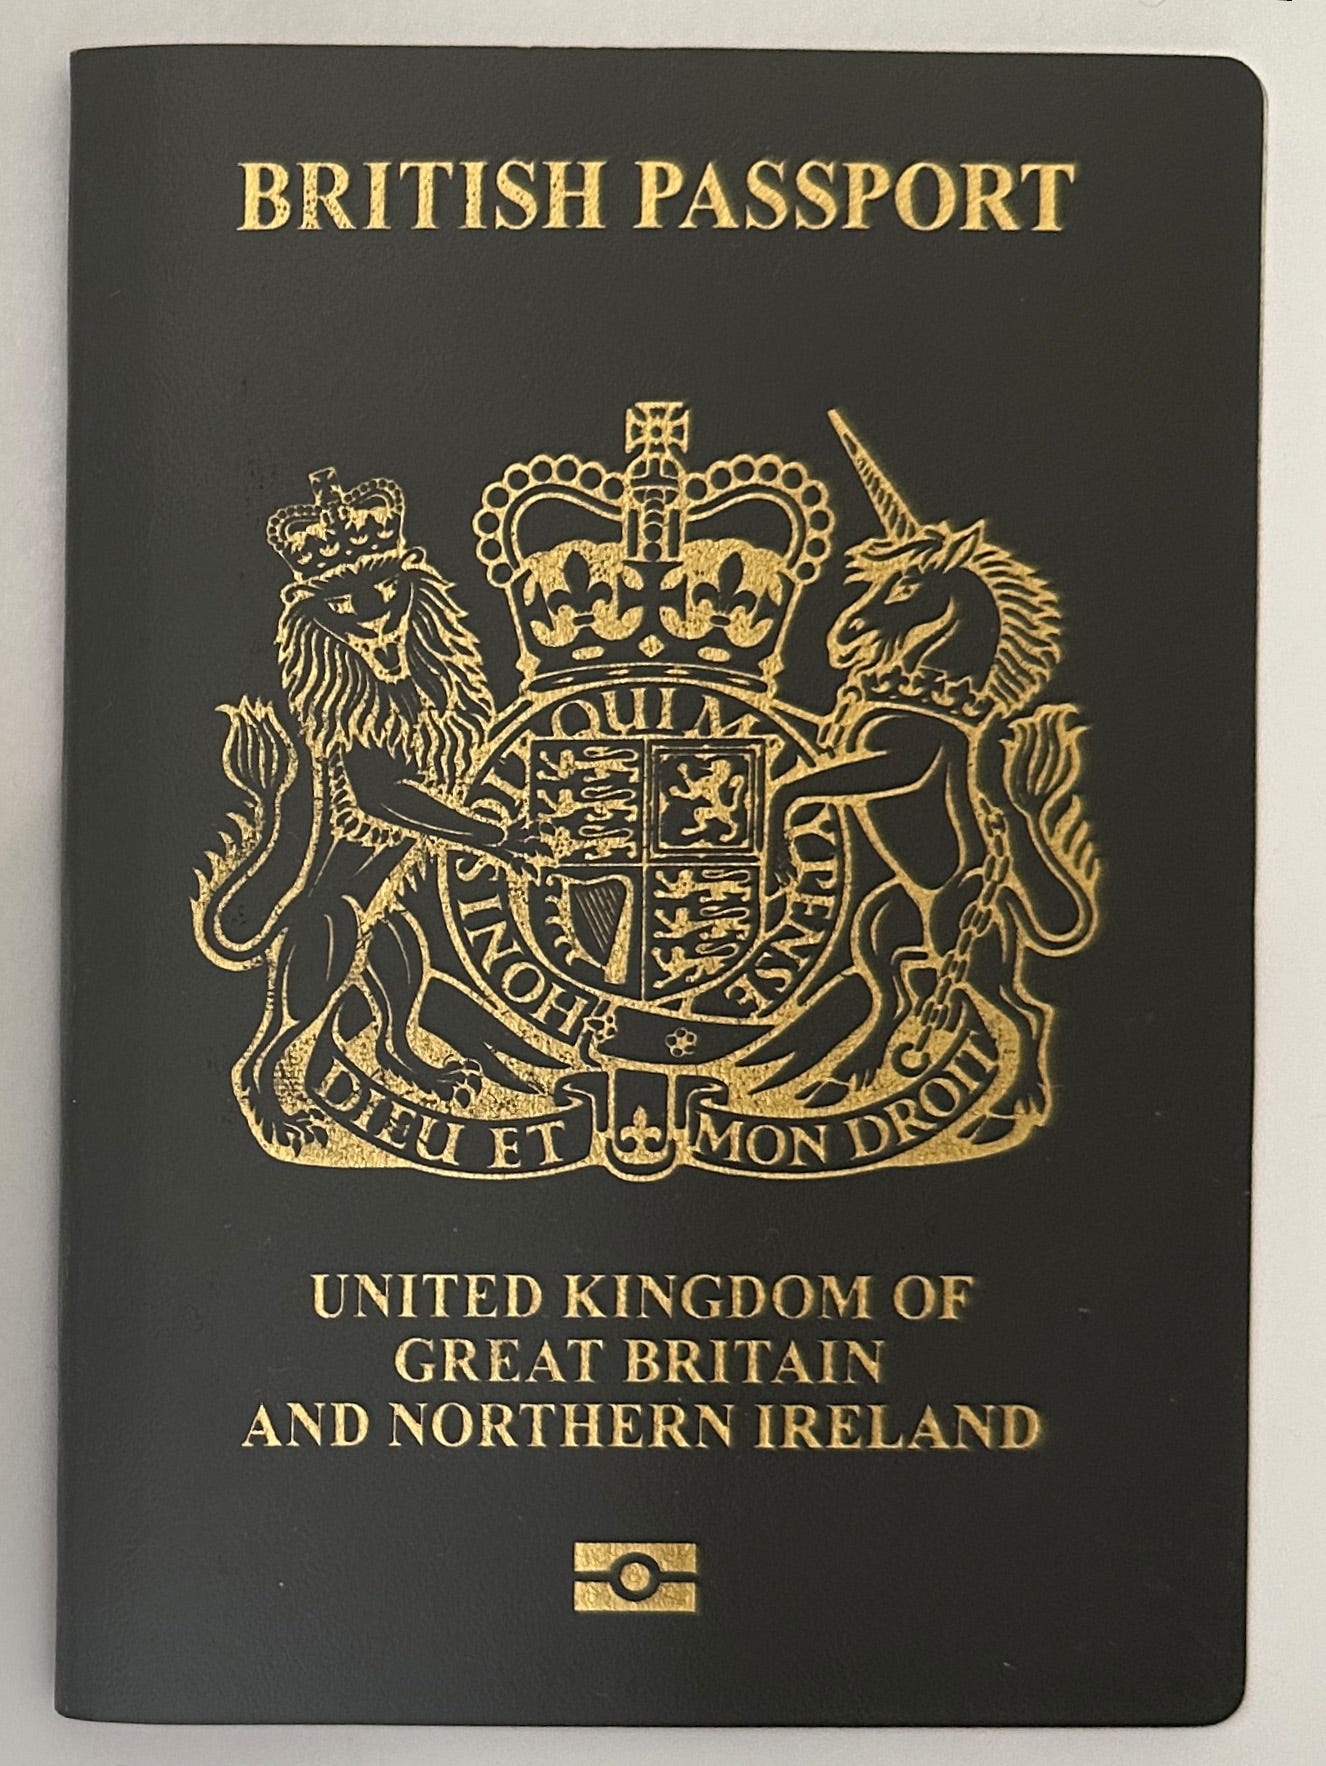 British passport - Wikipedia